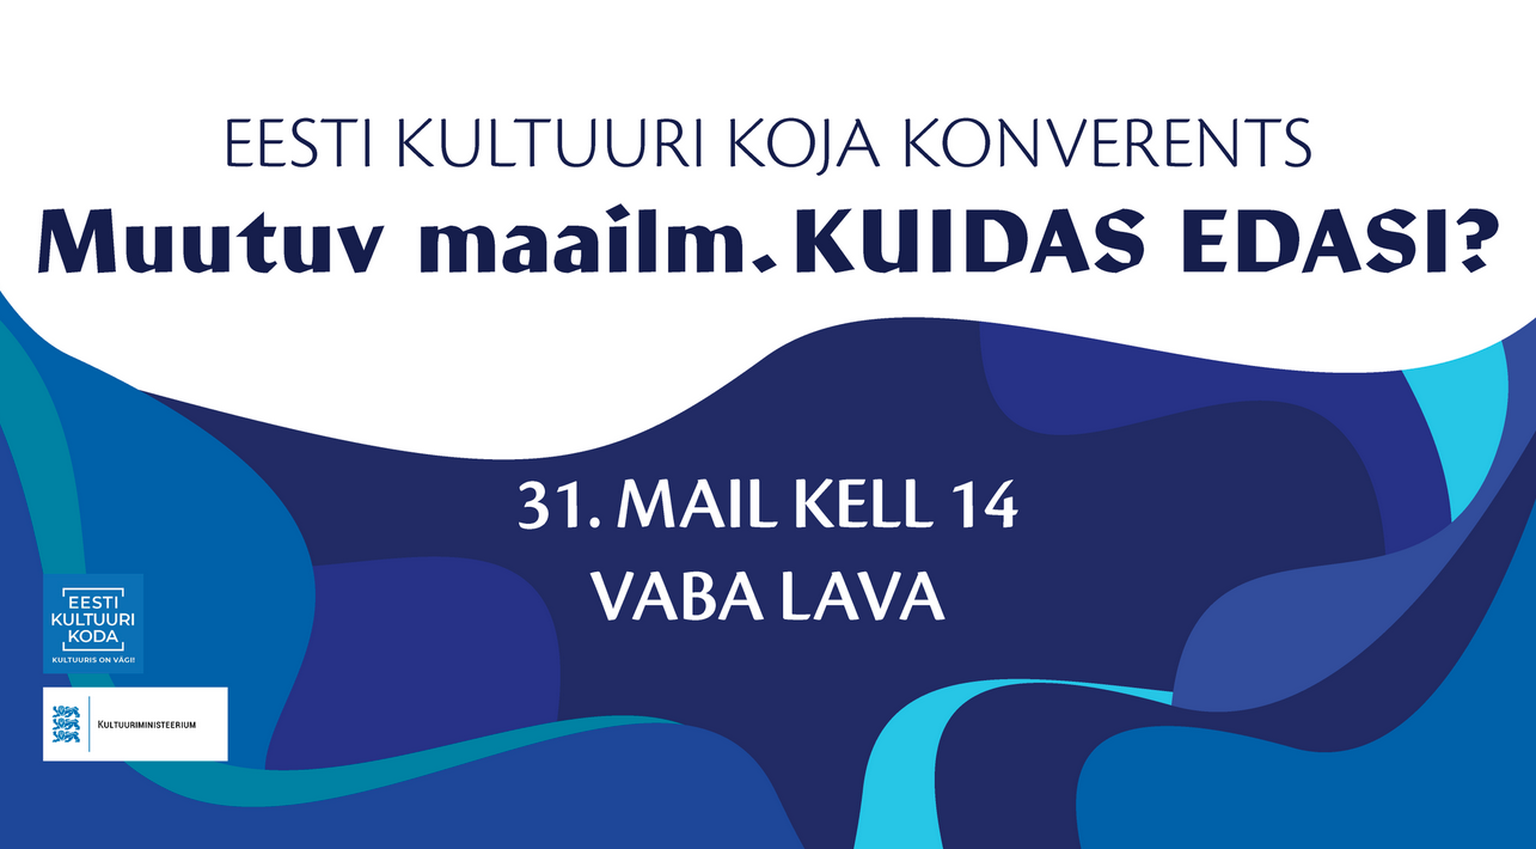 Eesti Kultuuri Koja aastakonverents «Muutuv maailm. Kuidas edasi?» 31.05.2022